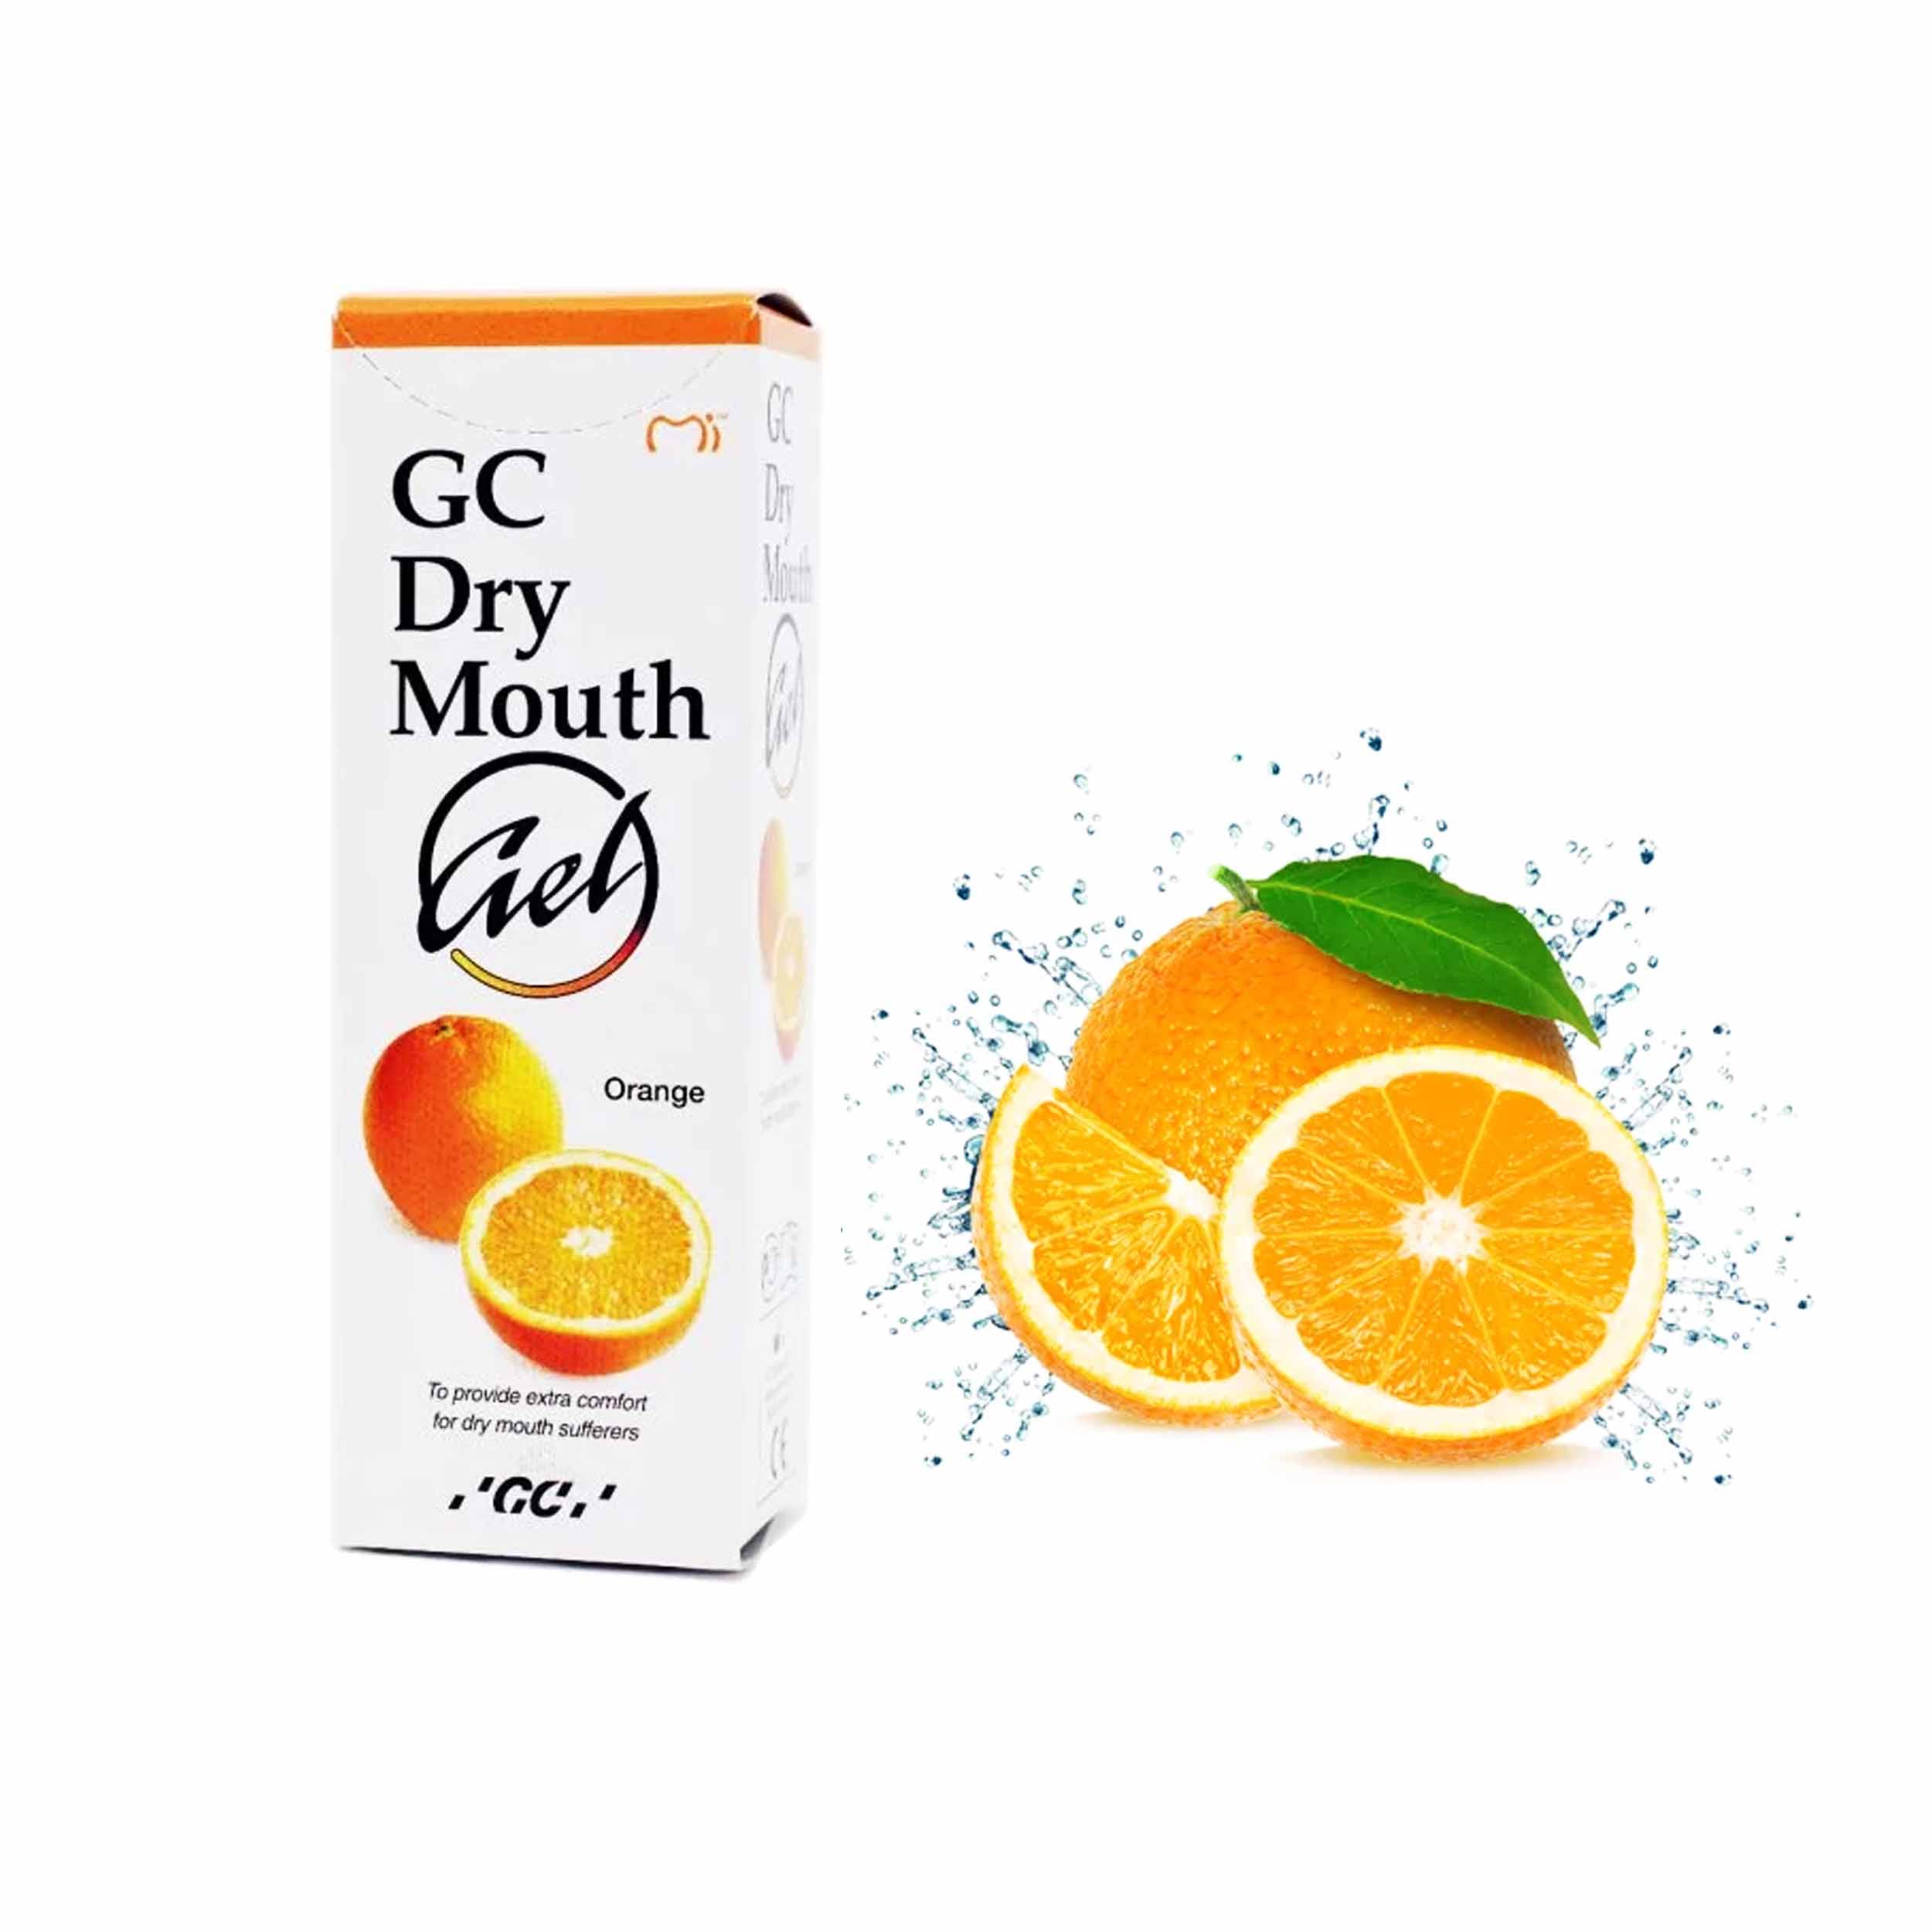 GC Dry Mouth Gel Orange 40gm